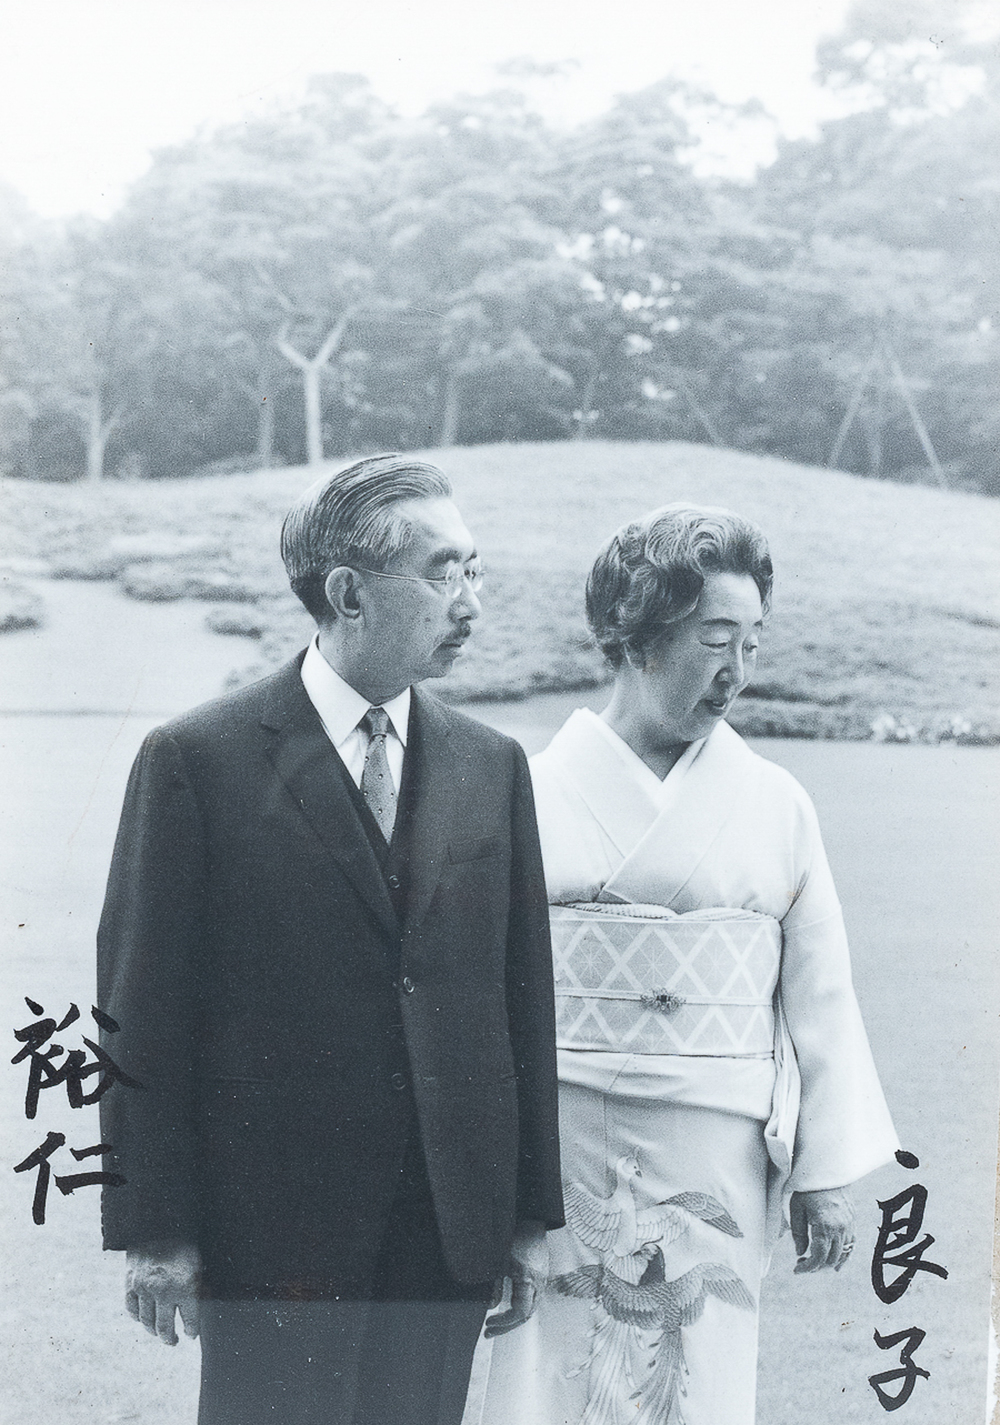 Een gesigneerde zwart-witfoto van de Japanse keizer Hirohito en keizerin Nagako, jaren '70